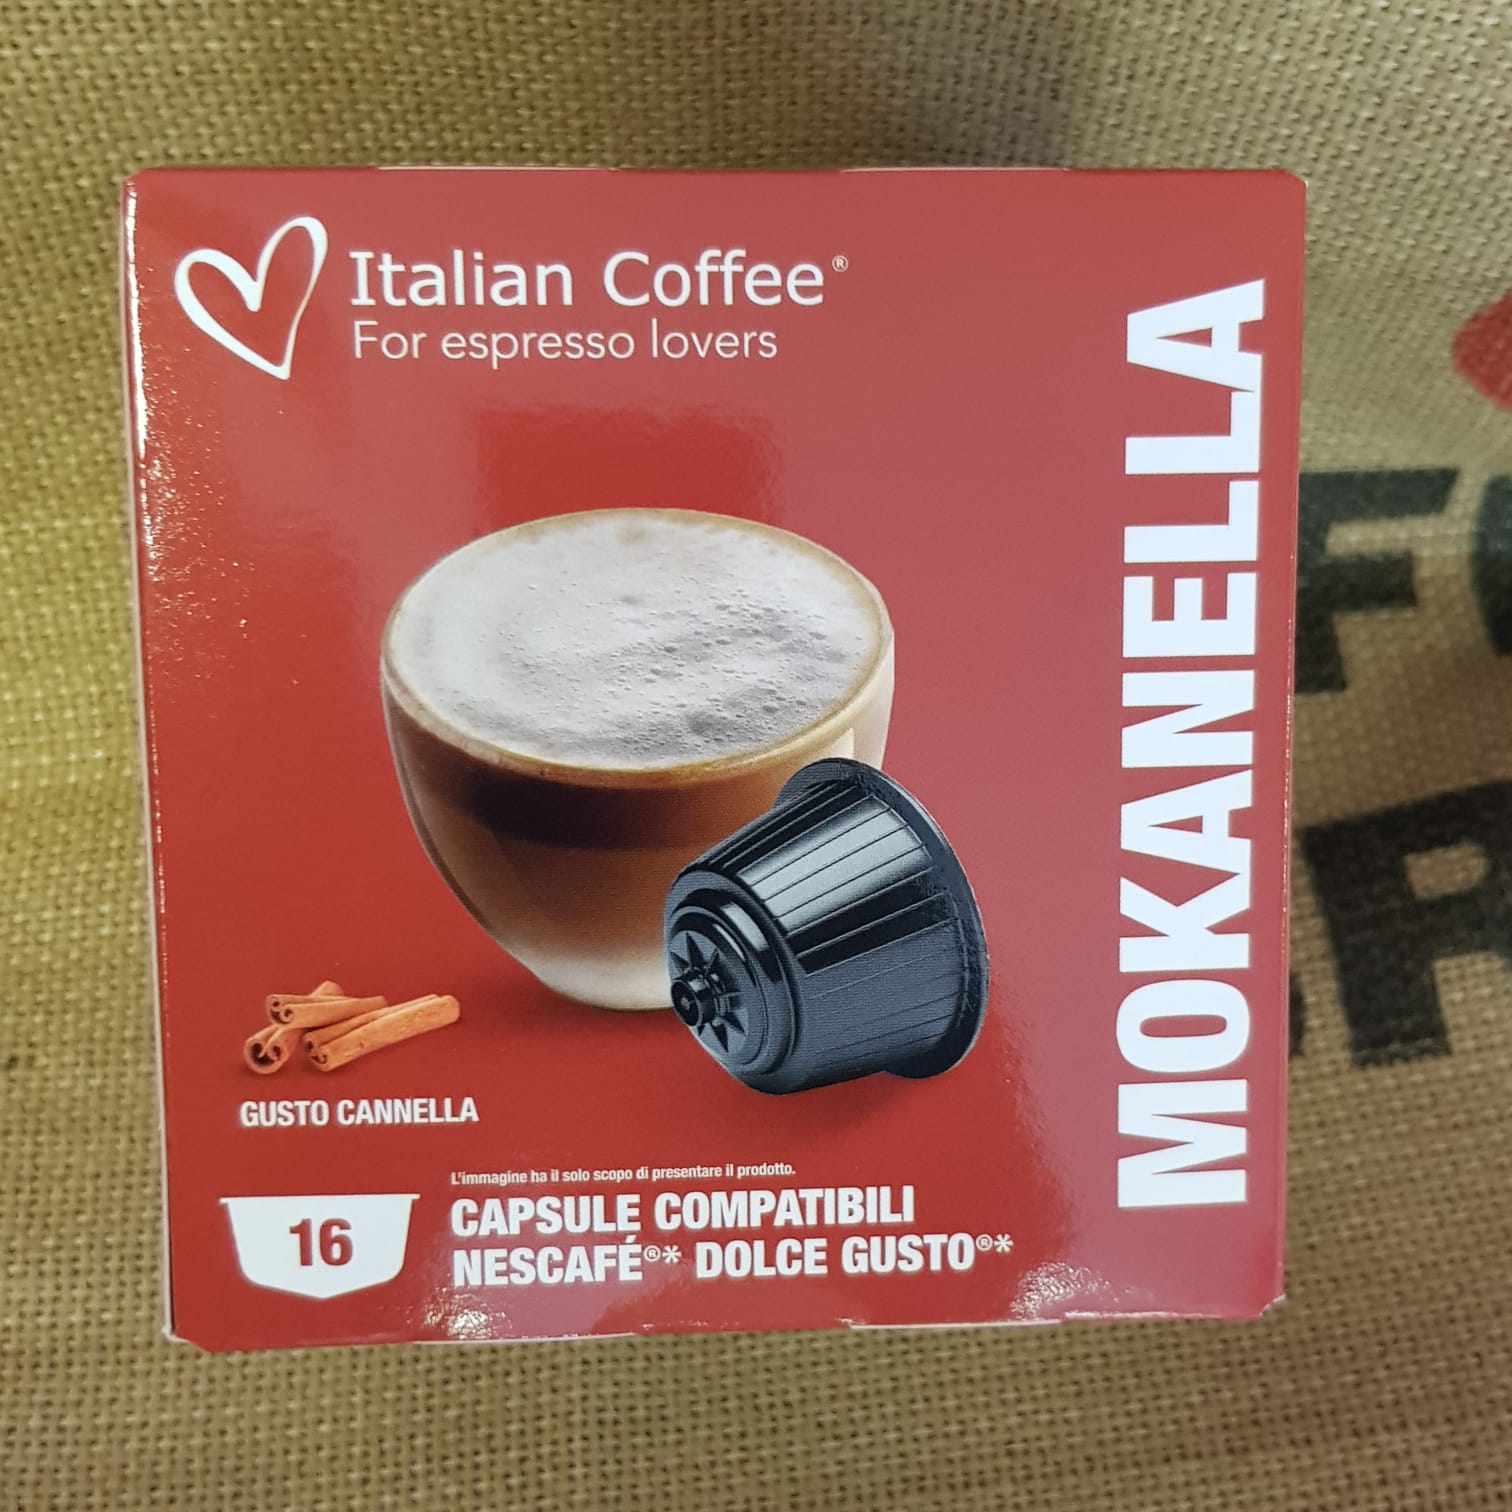 nescafè dolce gusto italian coffee mokanella